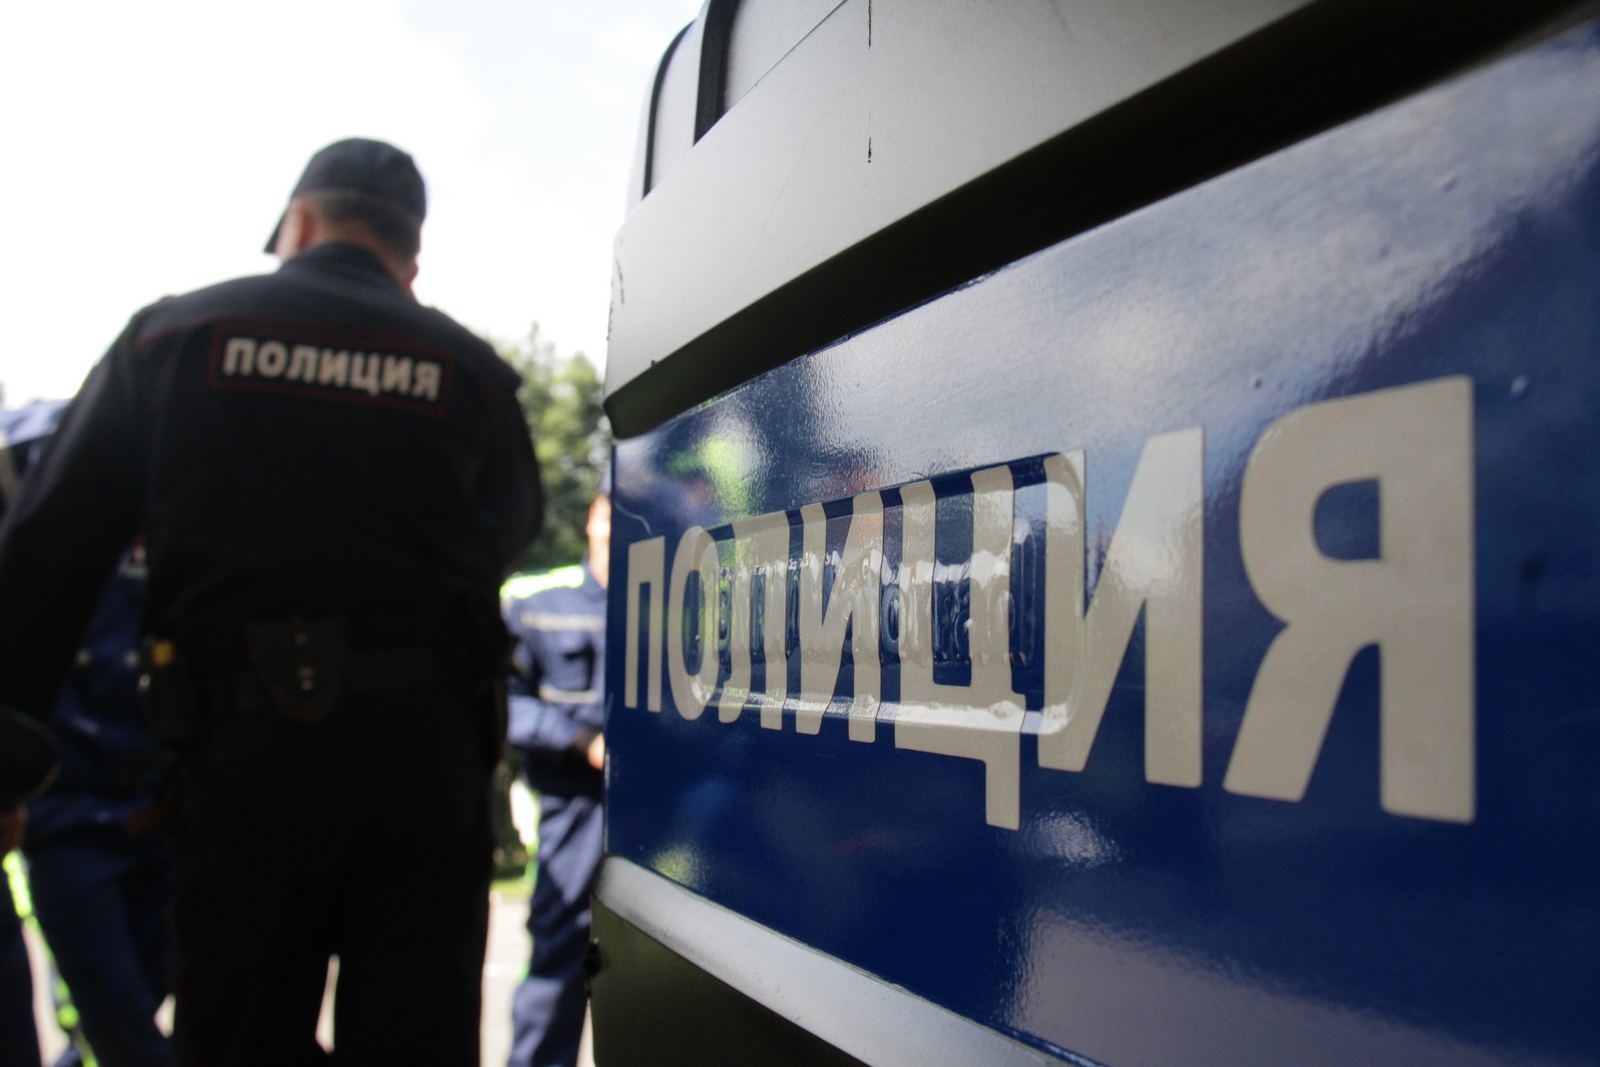 Три миллиона рублей похитили из иномарки на юго-западе Москвы, работает полиция